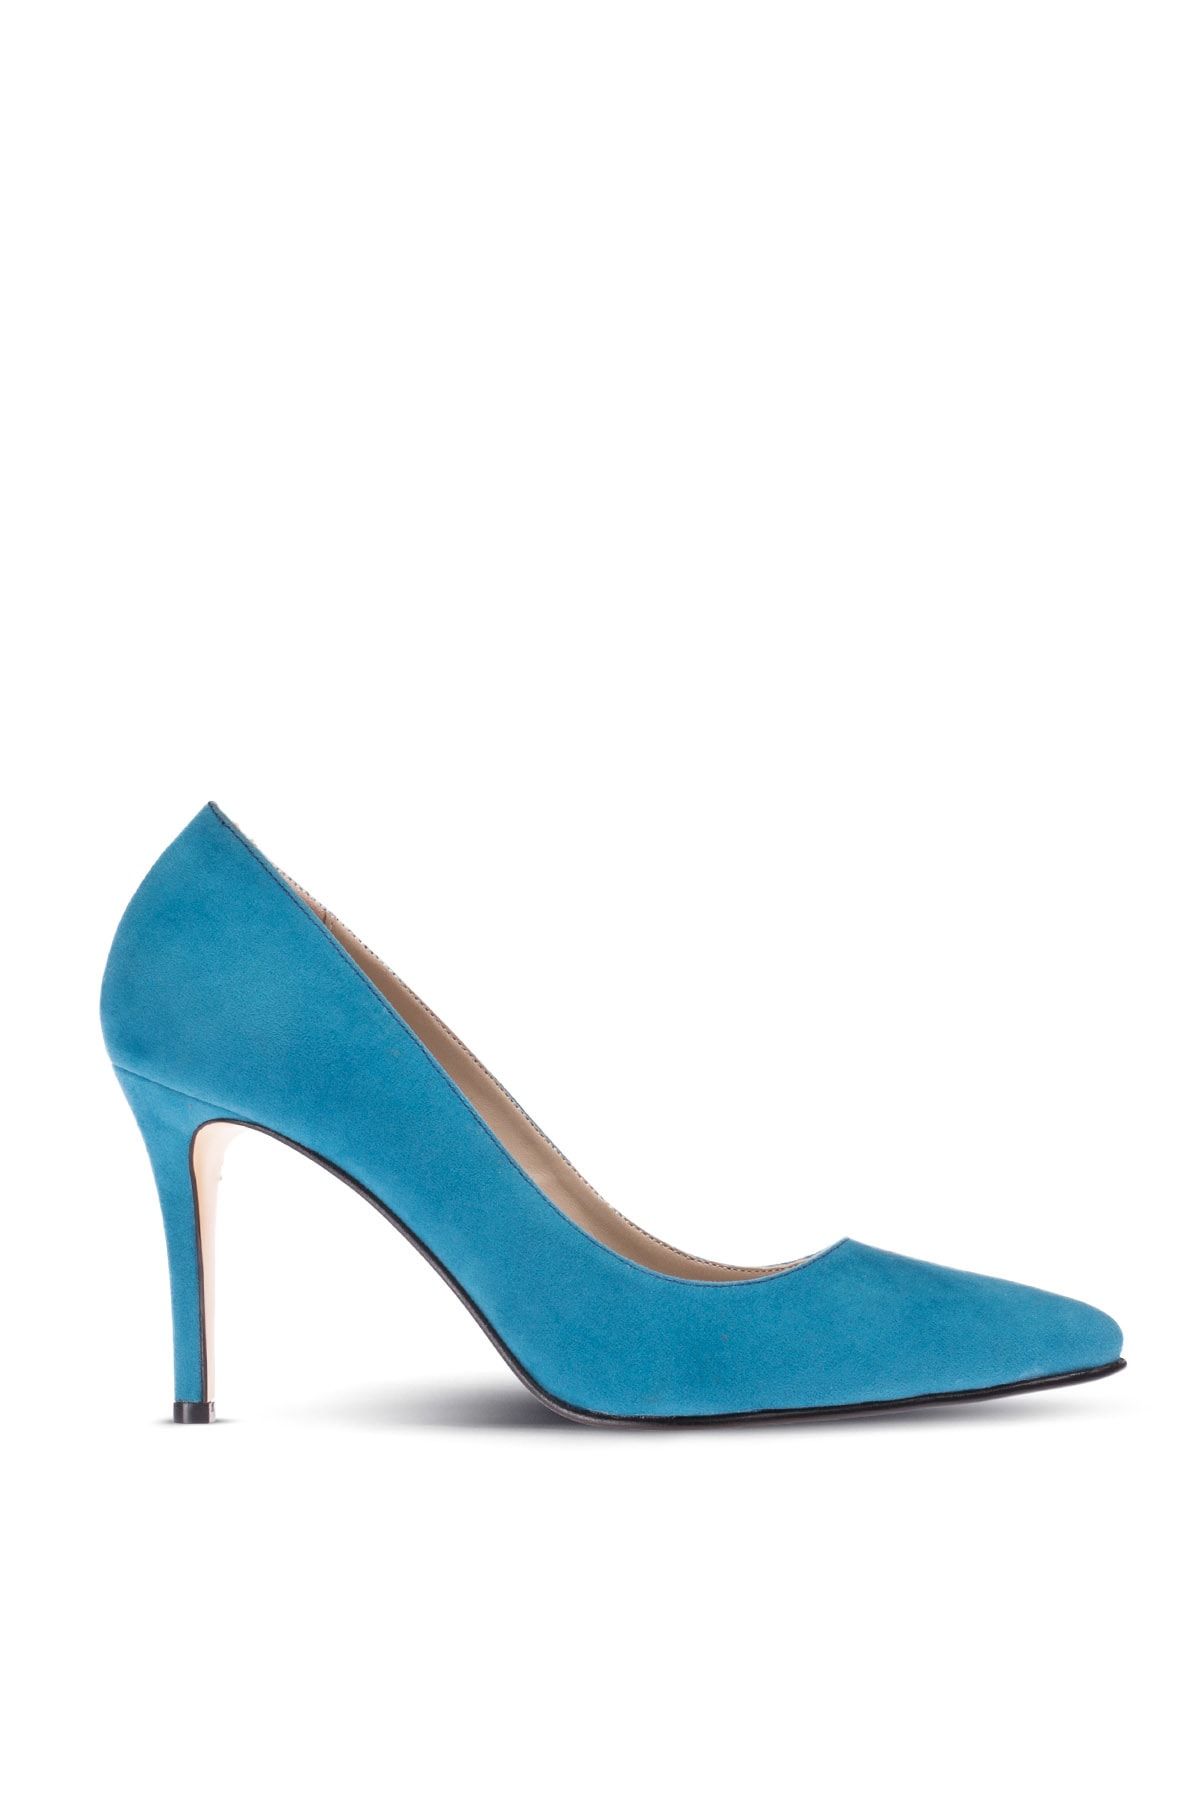 Deery Mavi Kadın Klasik Topuklu Ayakkabı 02029ZMVIM05